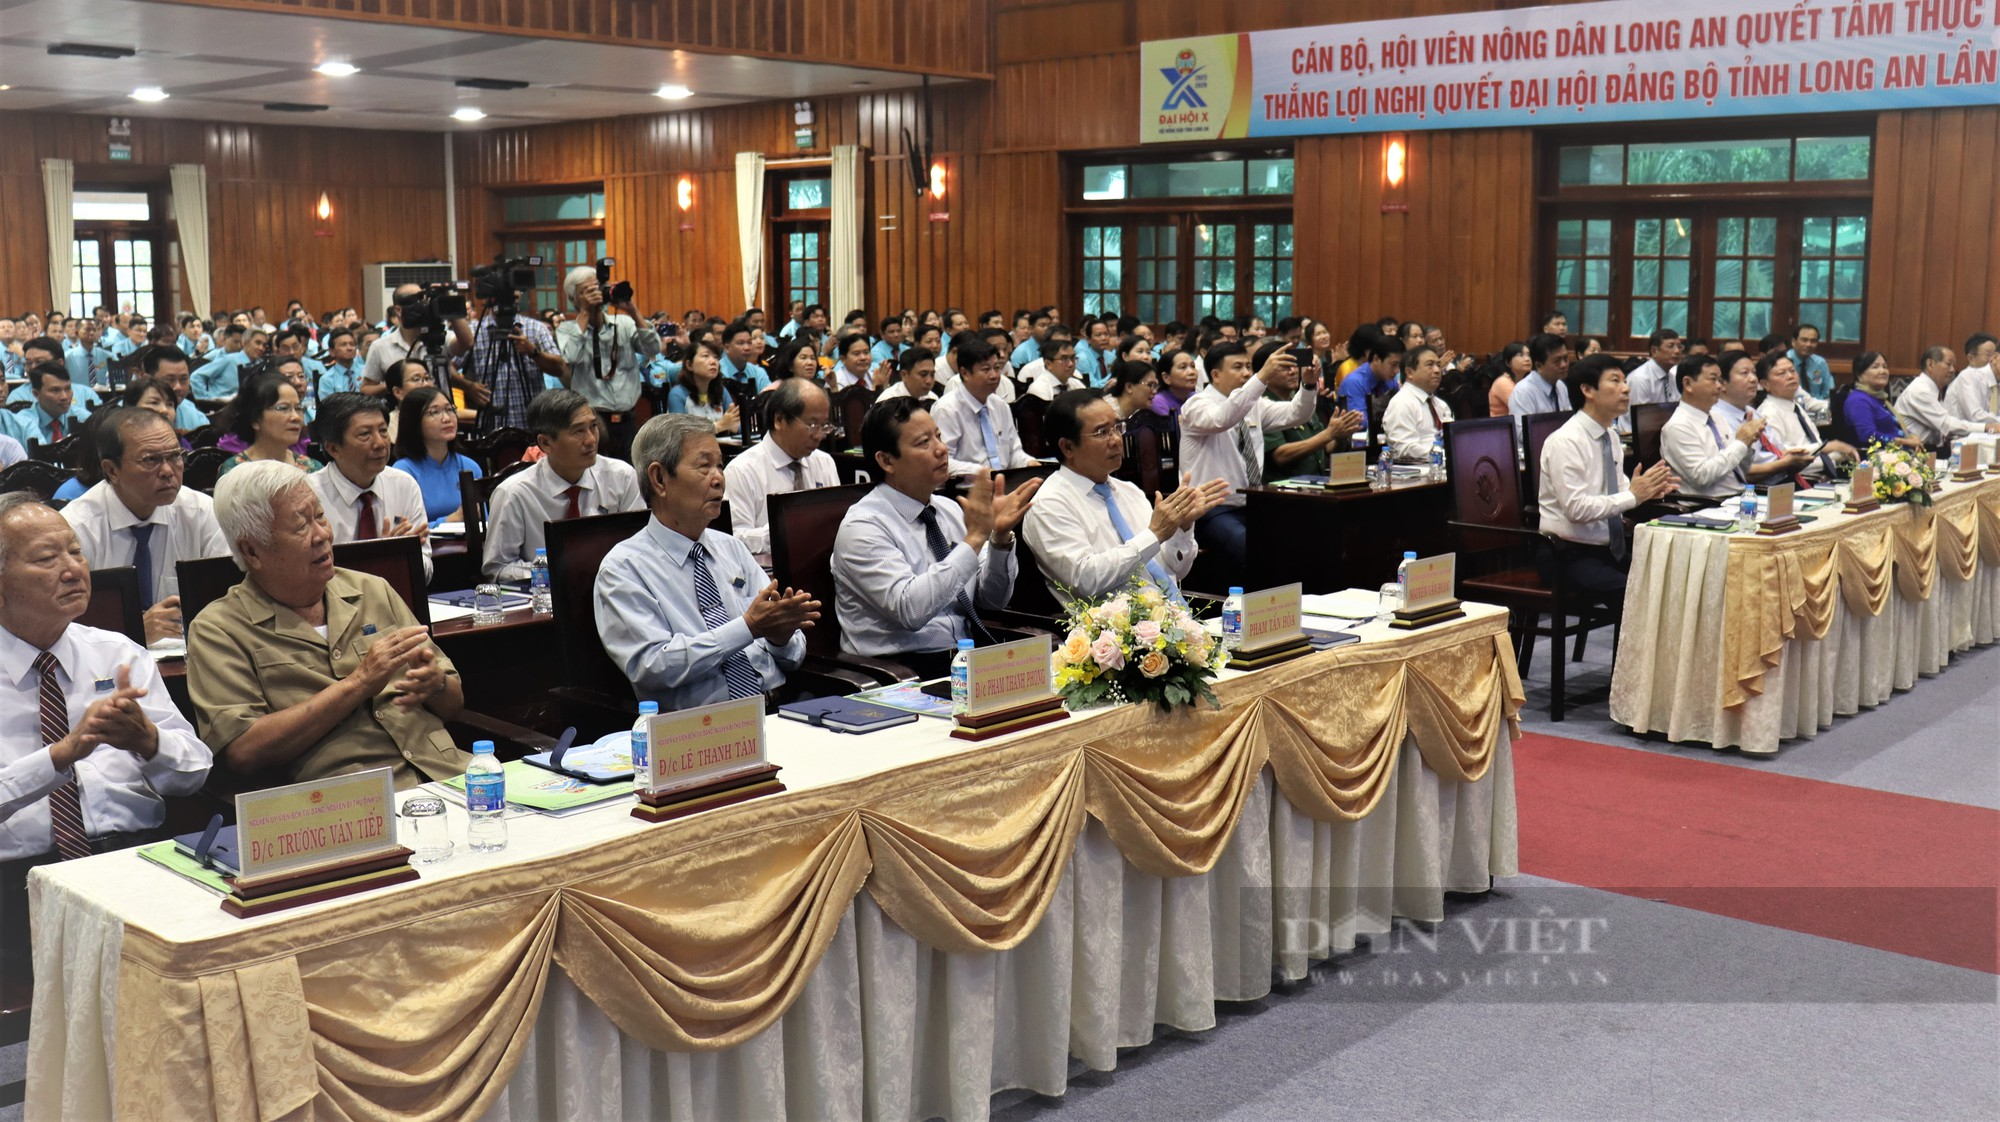 Đại hội HND tỉnh Long An, nhiệm kỳ 2023 - 2028: Xây dựng người nông dân Long An chuyên nghiệp, văn minh - Ảnh 5.